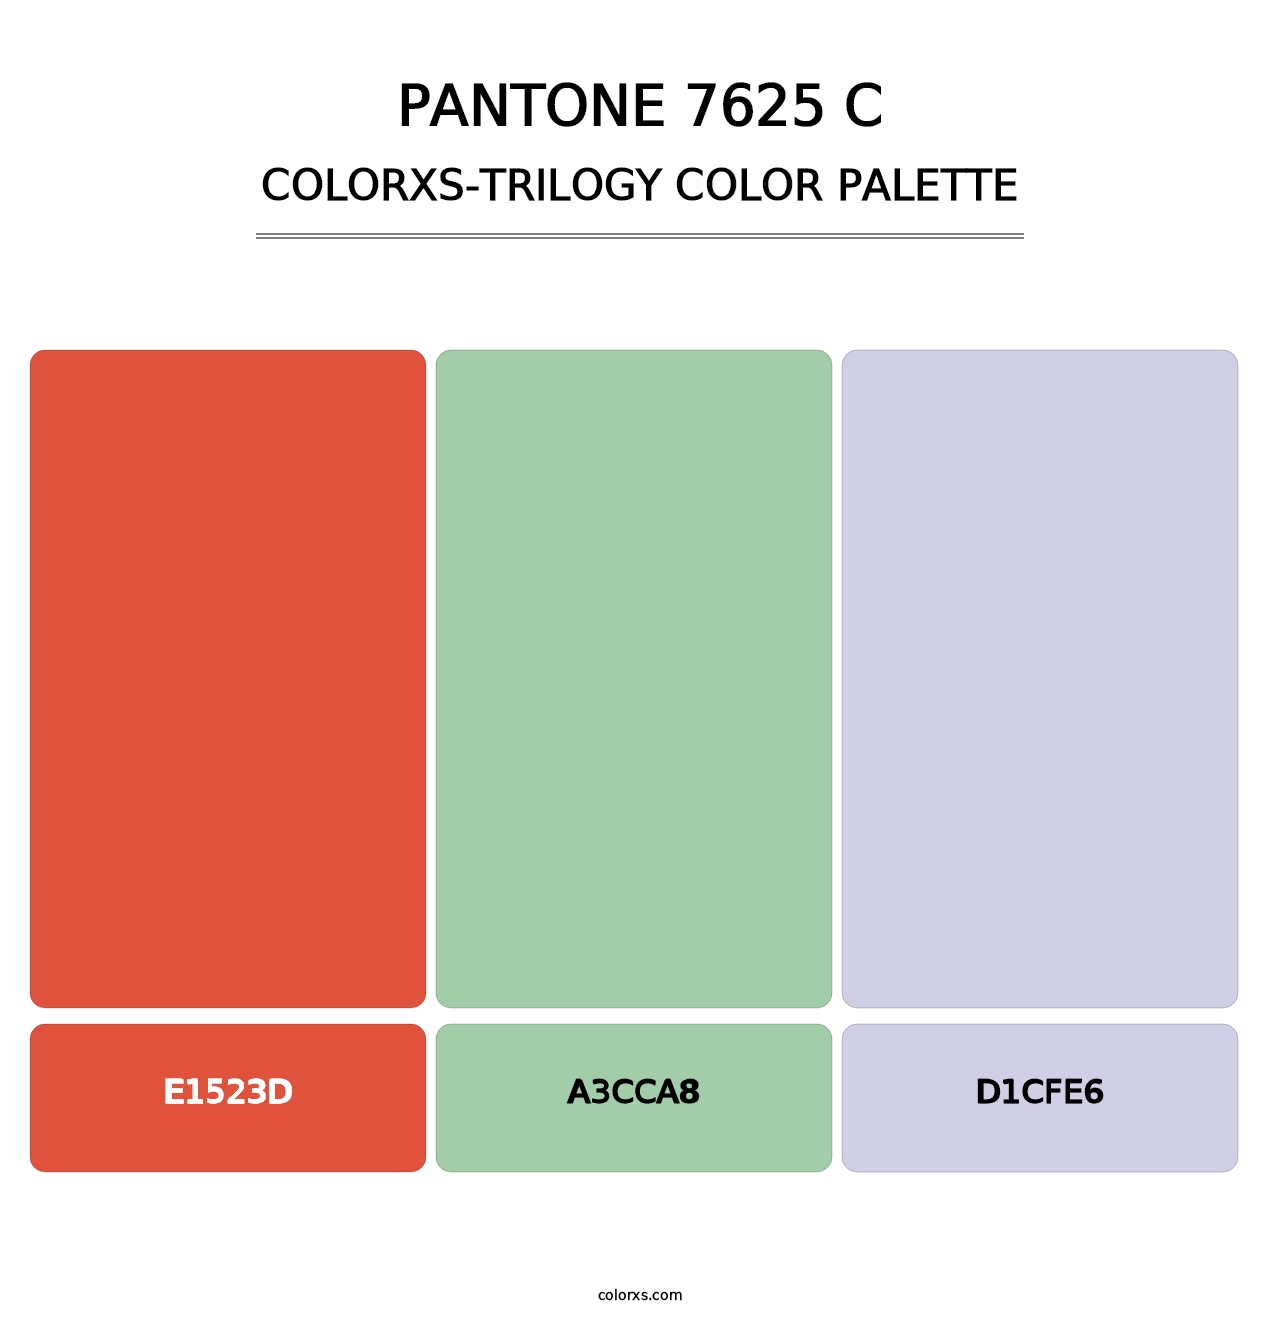 PANTONE 7625 C - Colorxs Trilogy Palette